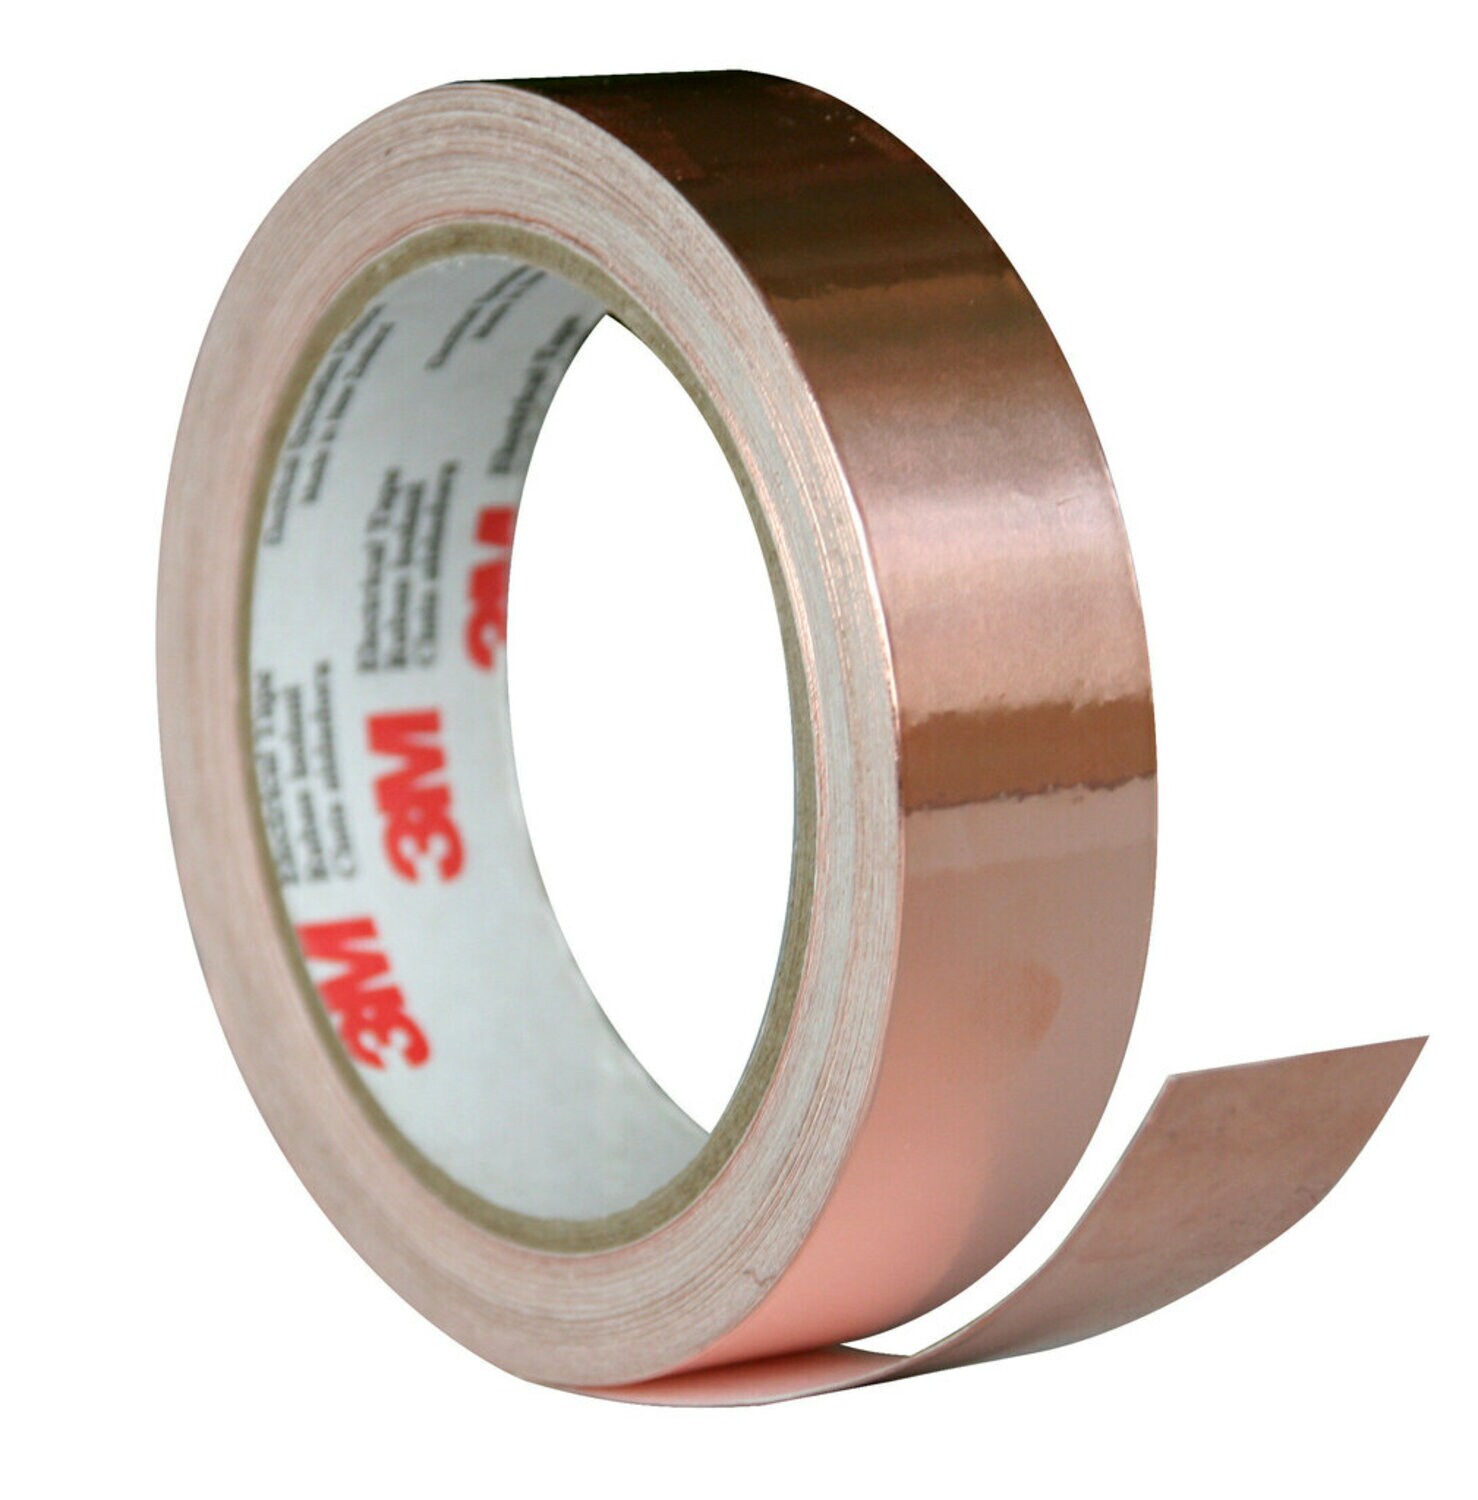 7010350306 - 3M Copper EMI Shielding Tape 1181, 6 in x 60 yd, 3 in paper core,
Mini-case